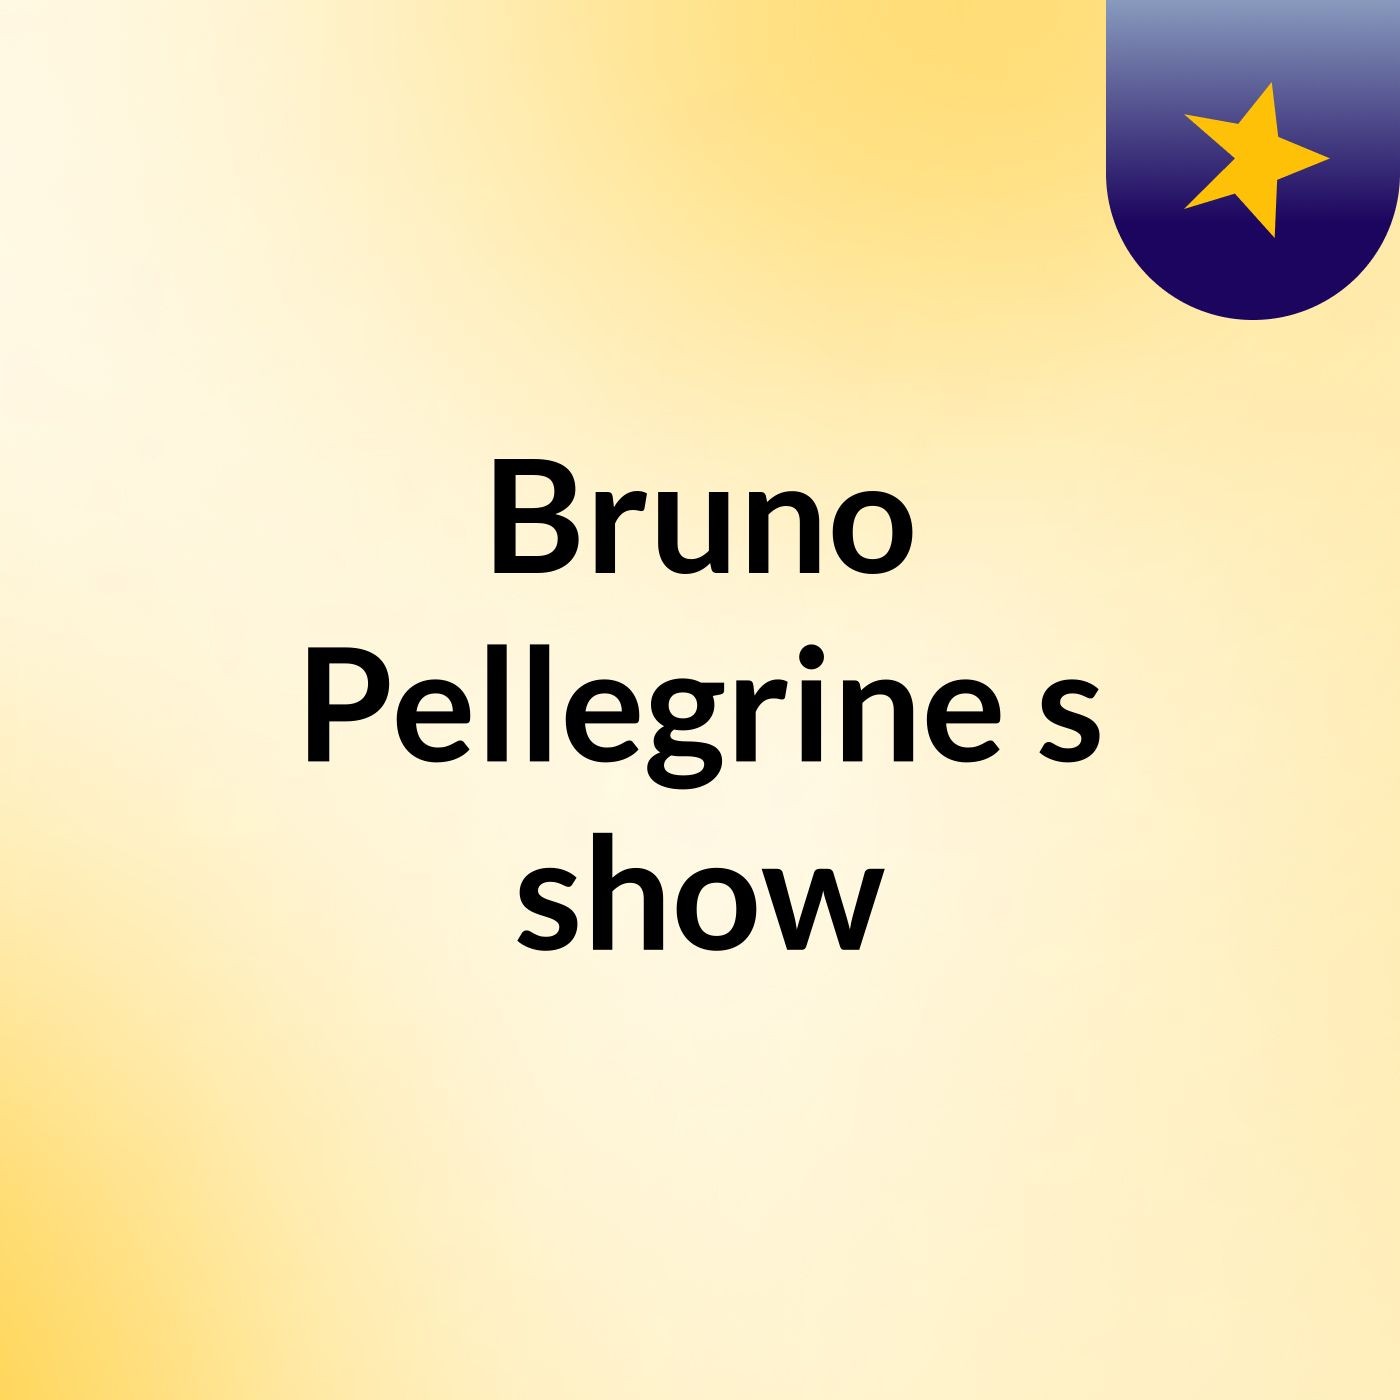 Episódio 4 - Bruno Pellegrine's show